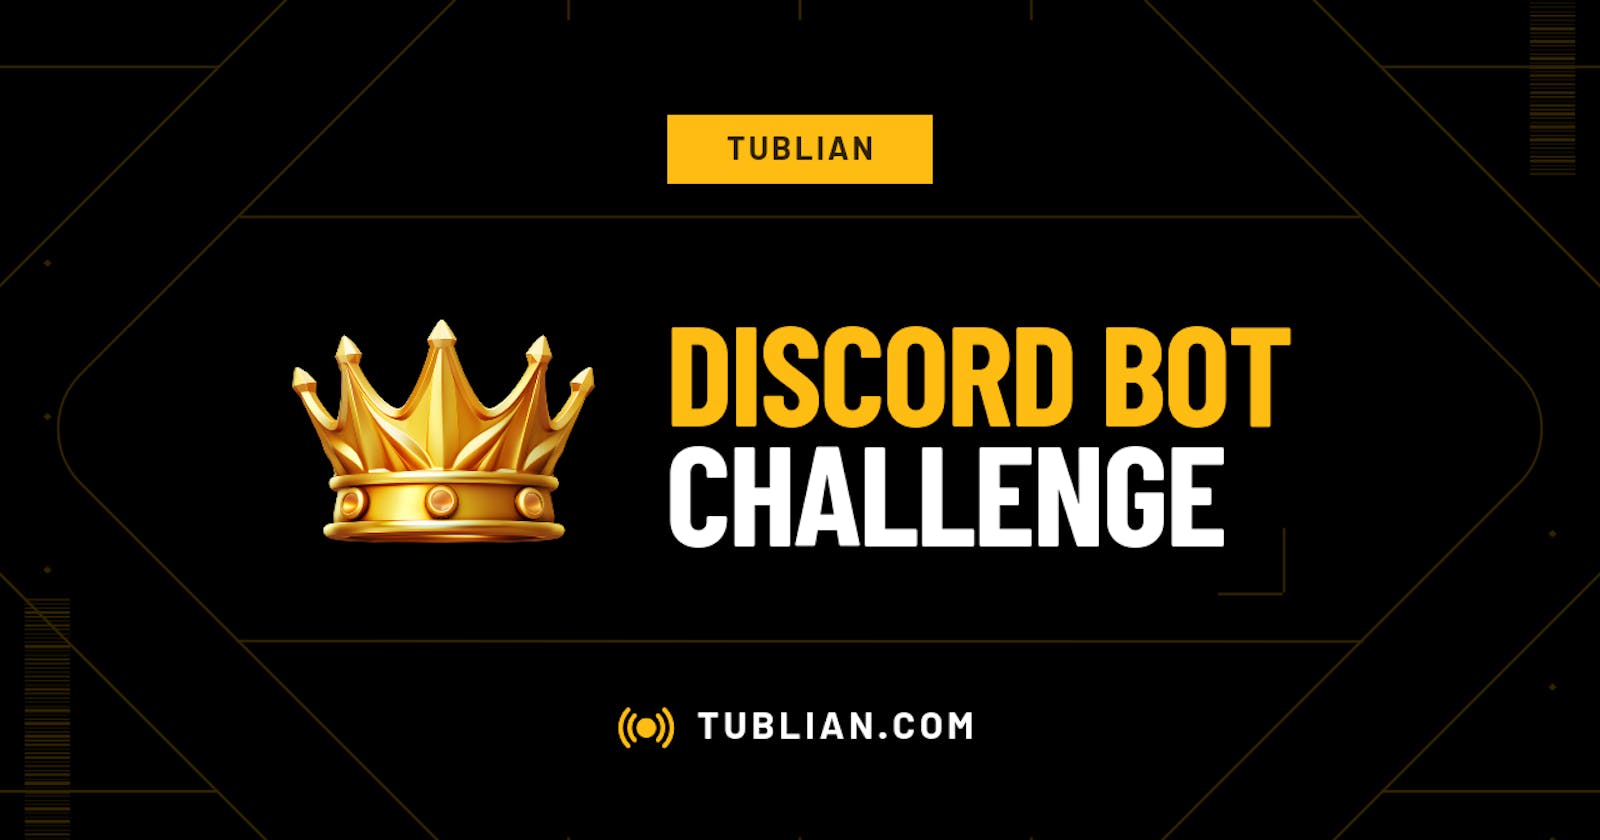 Tublian Prompt Engineering Challenge ($100)